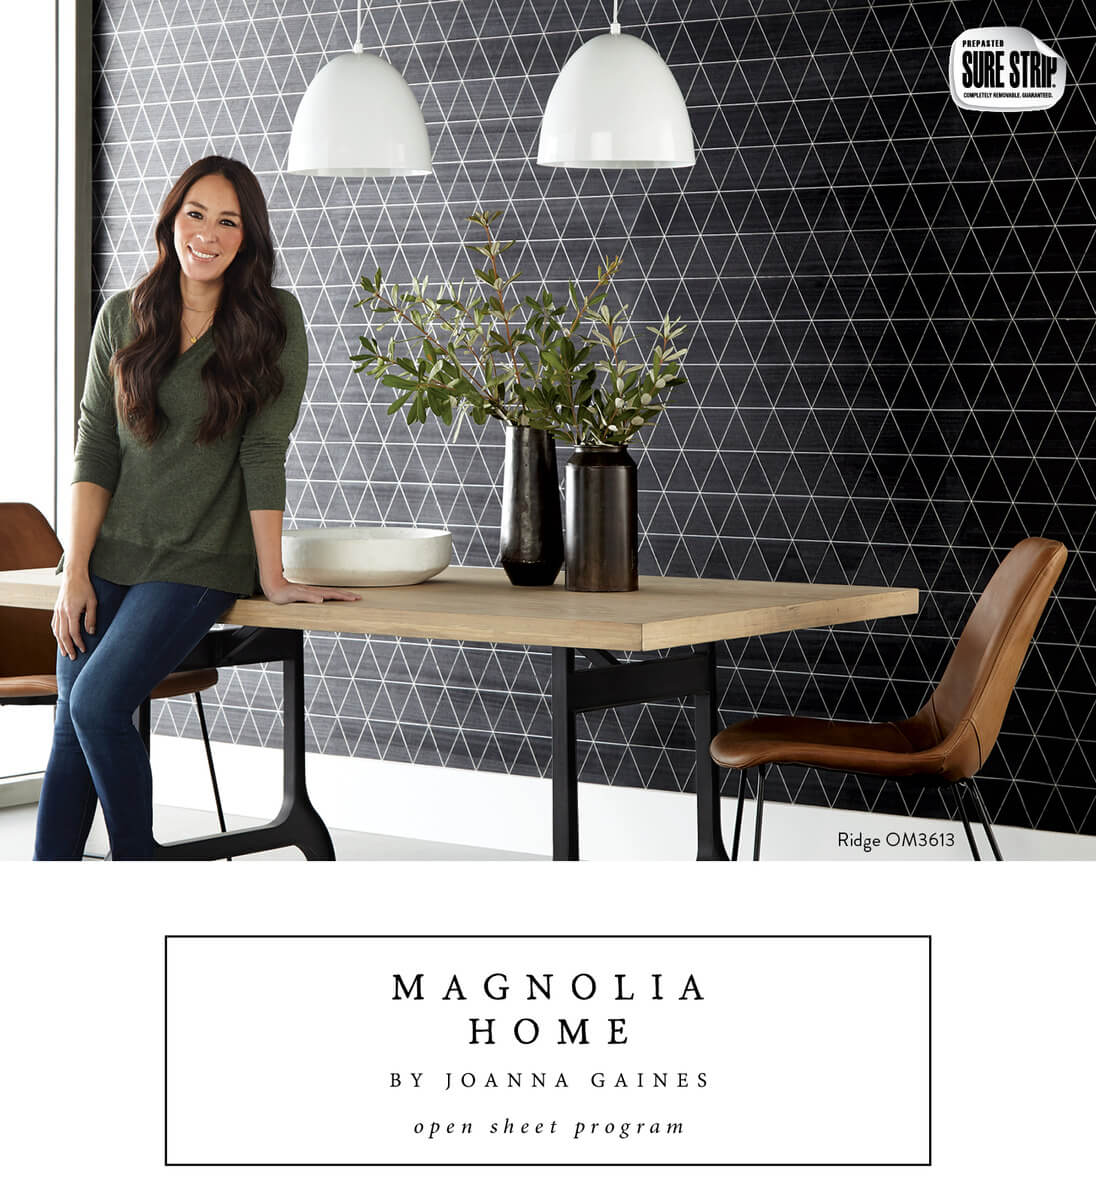 Magnolia Home Channel Wallpaper - Black